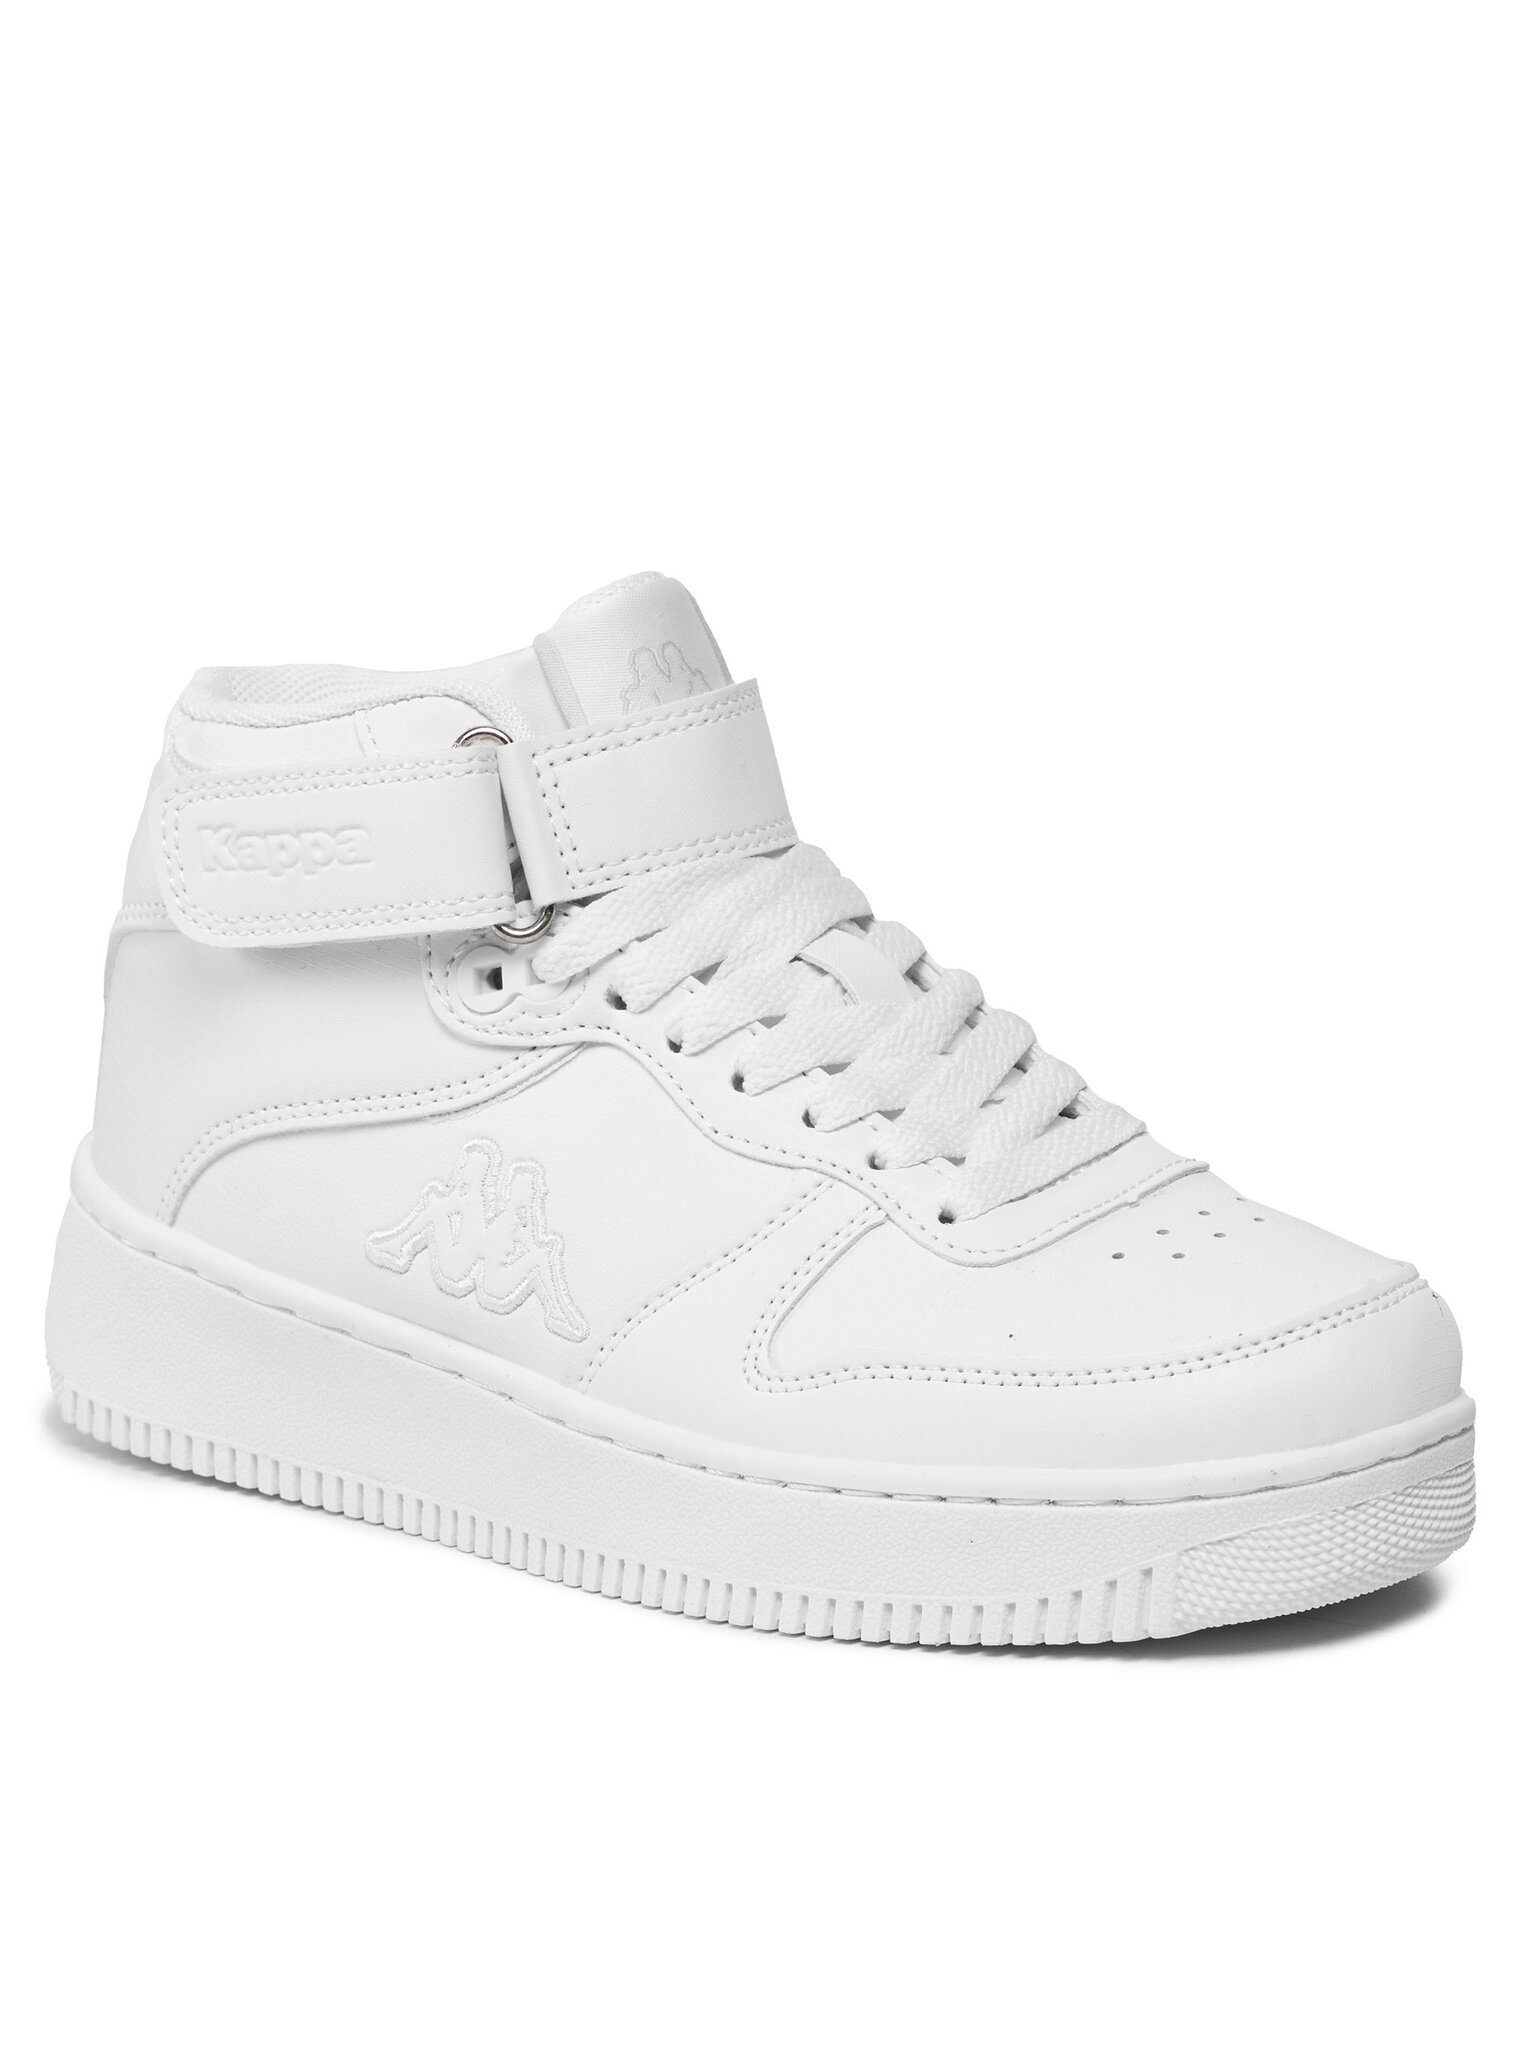 Kappa Sneakers 35164DW White 001 Sneaker